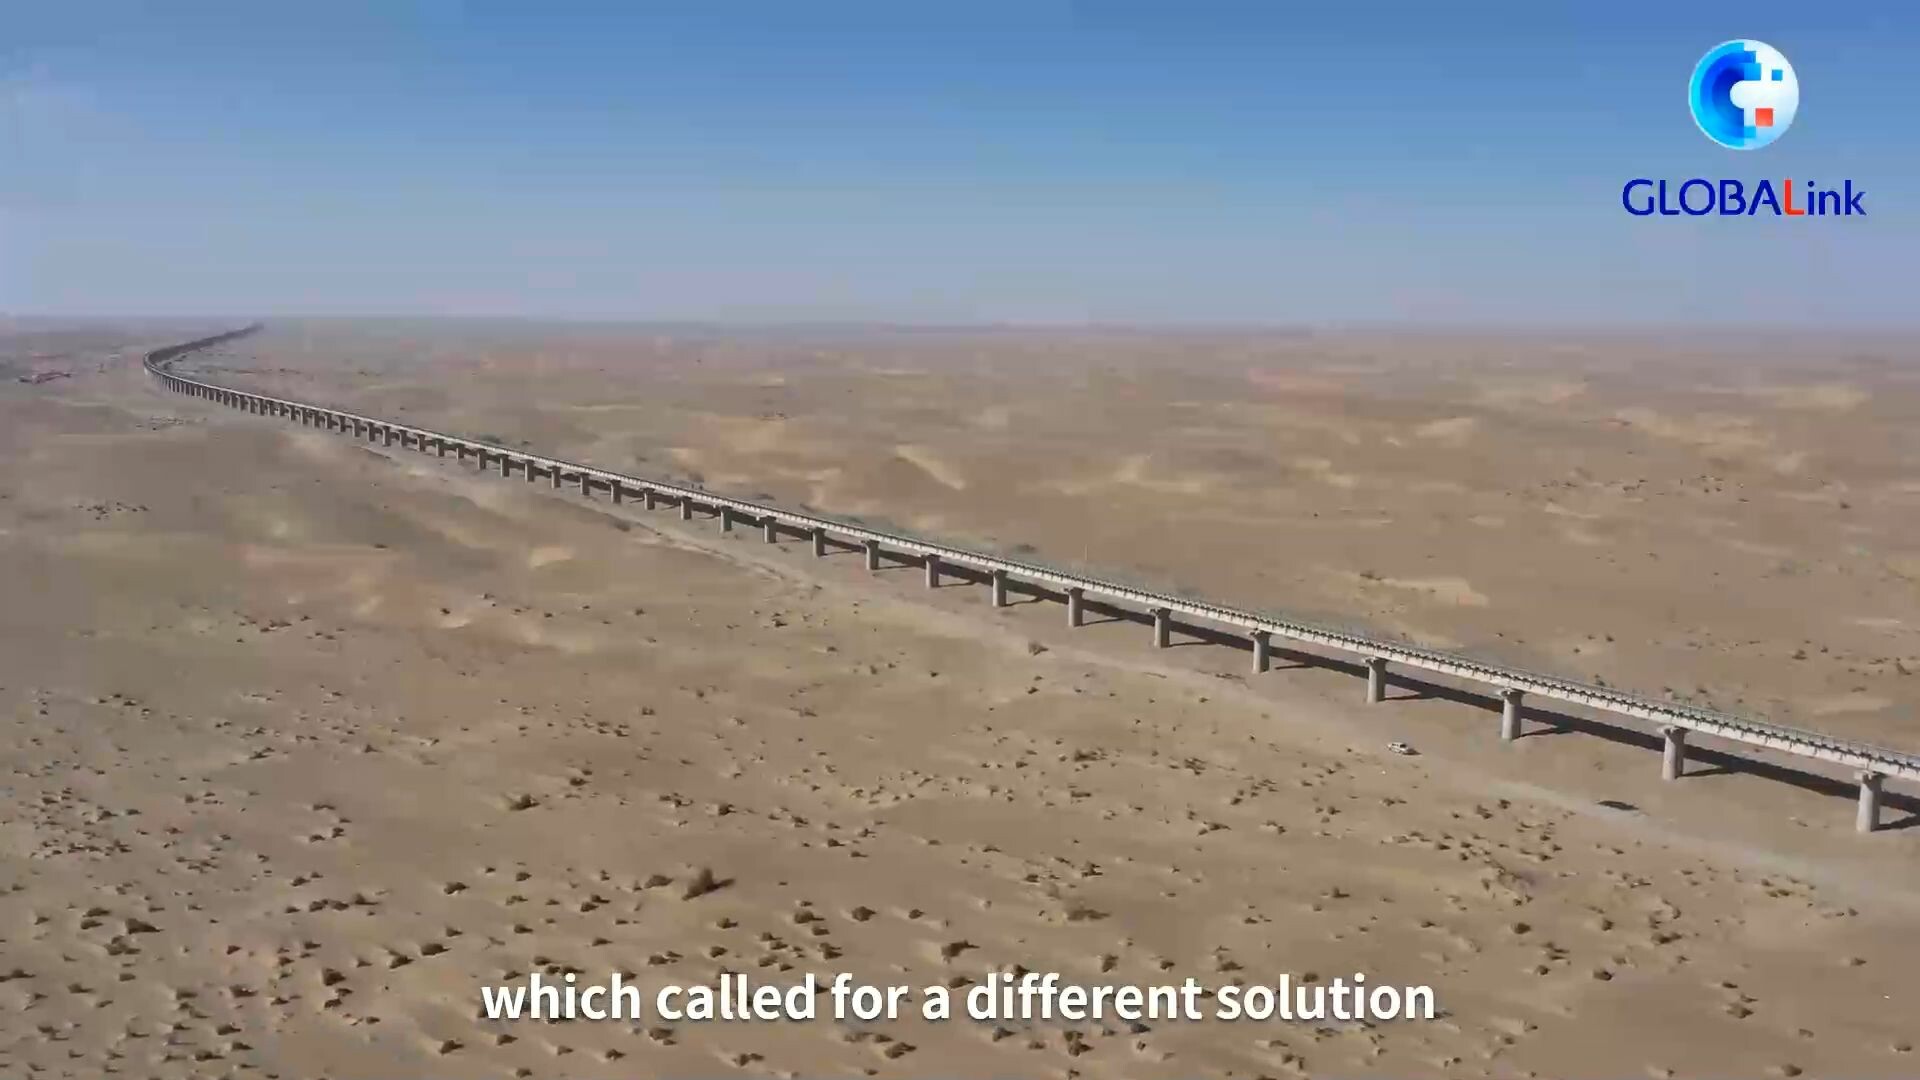 สุดหิน! ส่องอภิมหาโครงการ 'ทางรถไฟรอบทะเลทราย' สายแรกของโลกในจีน